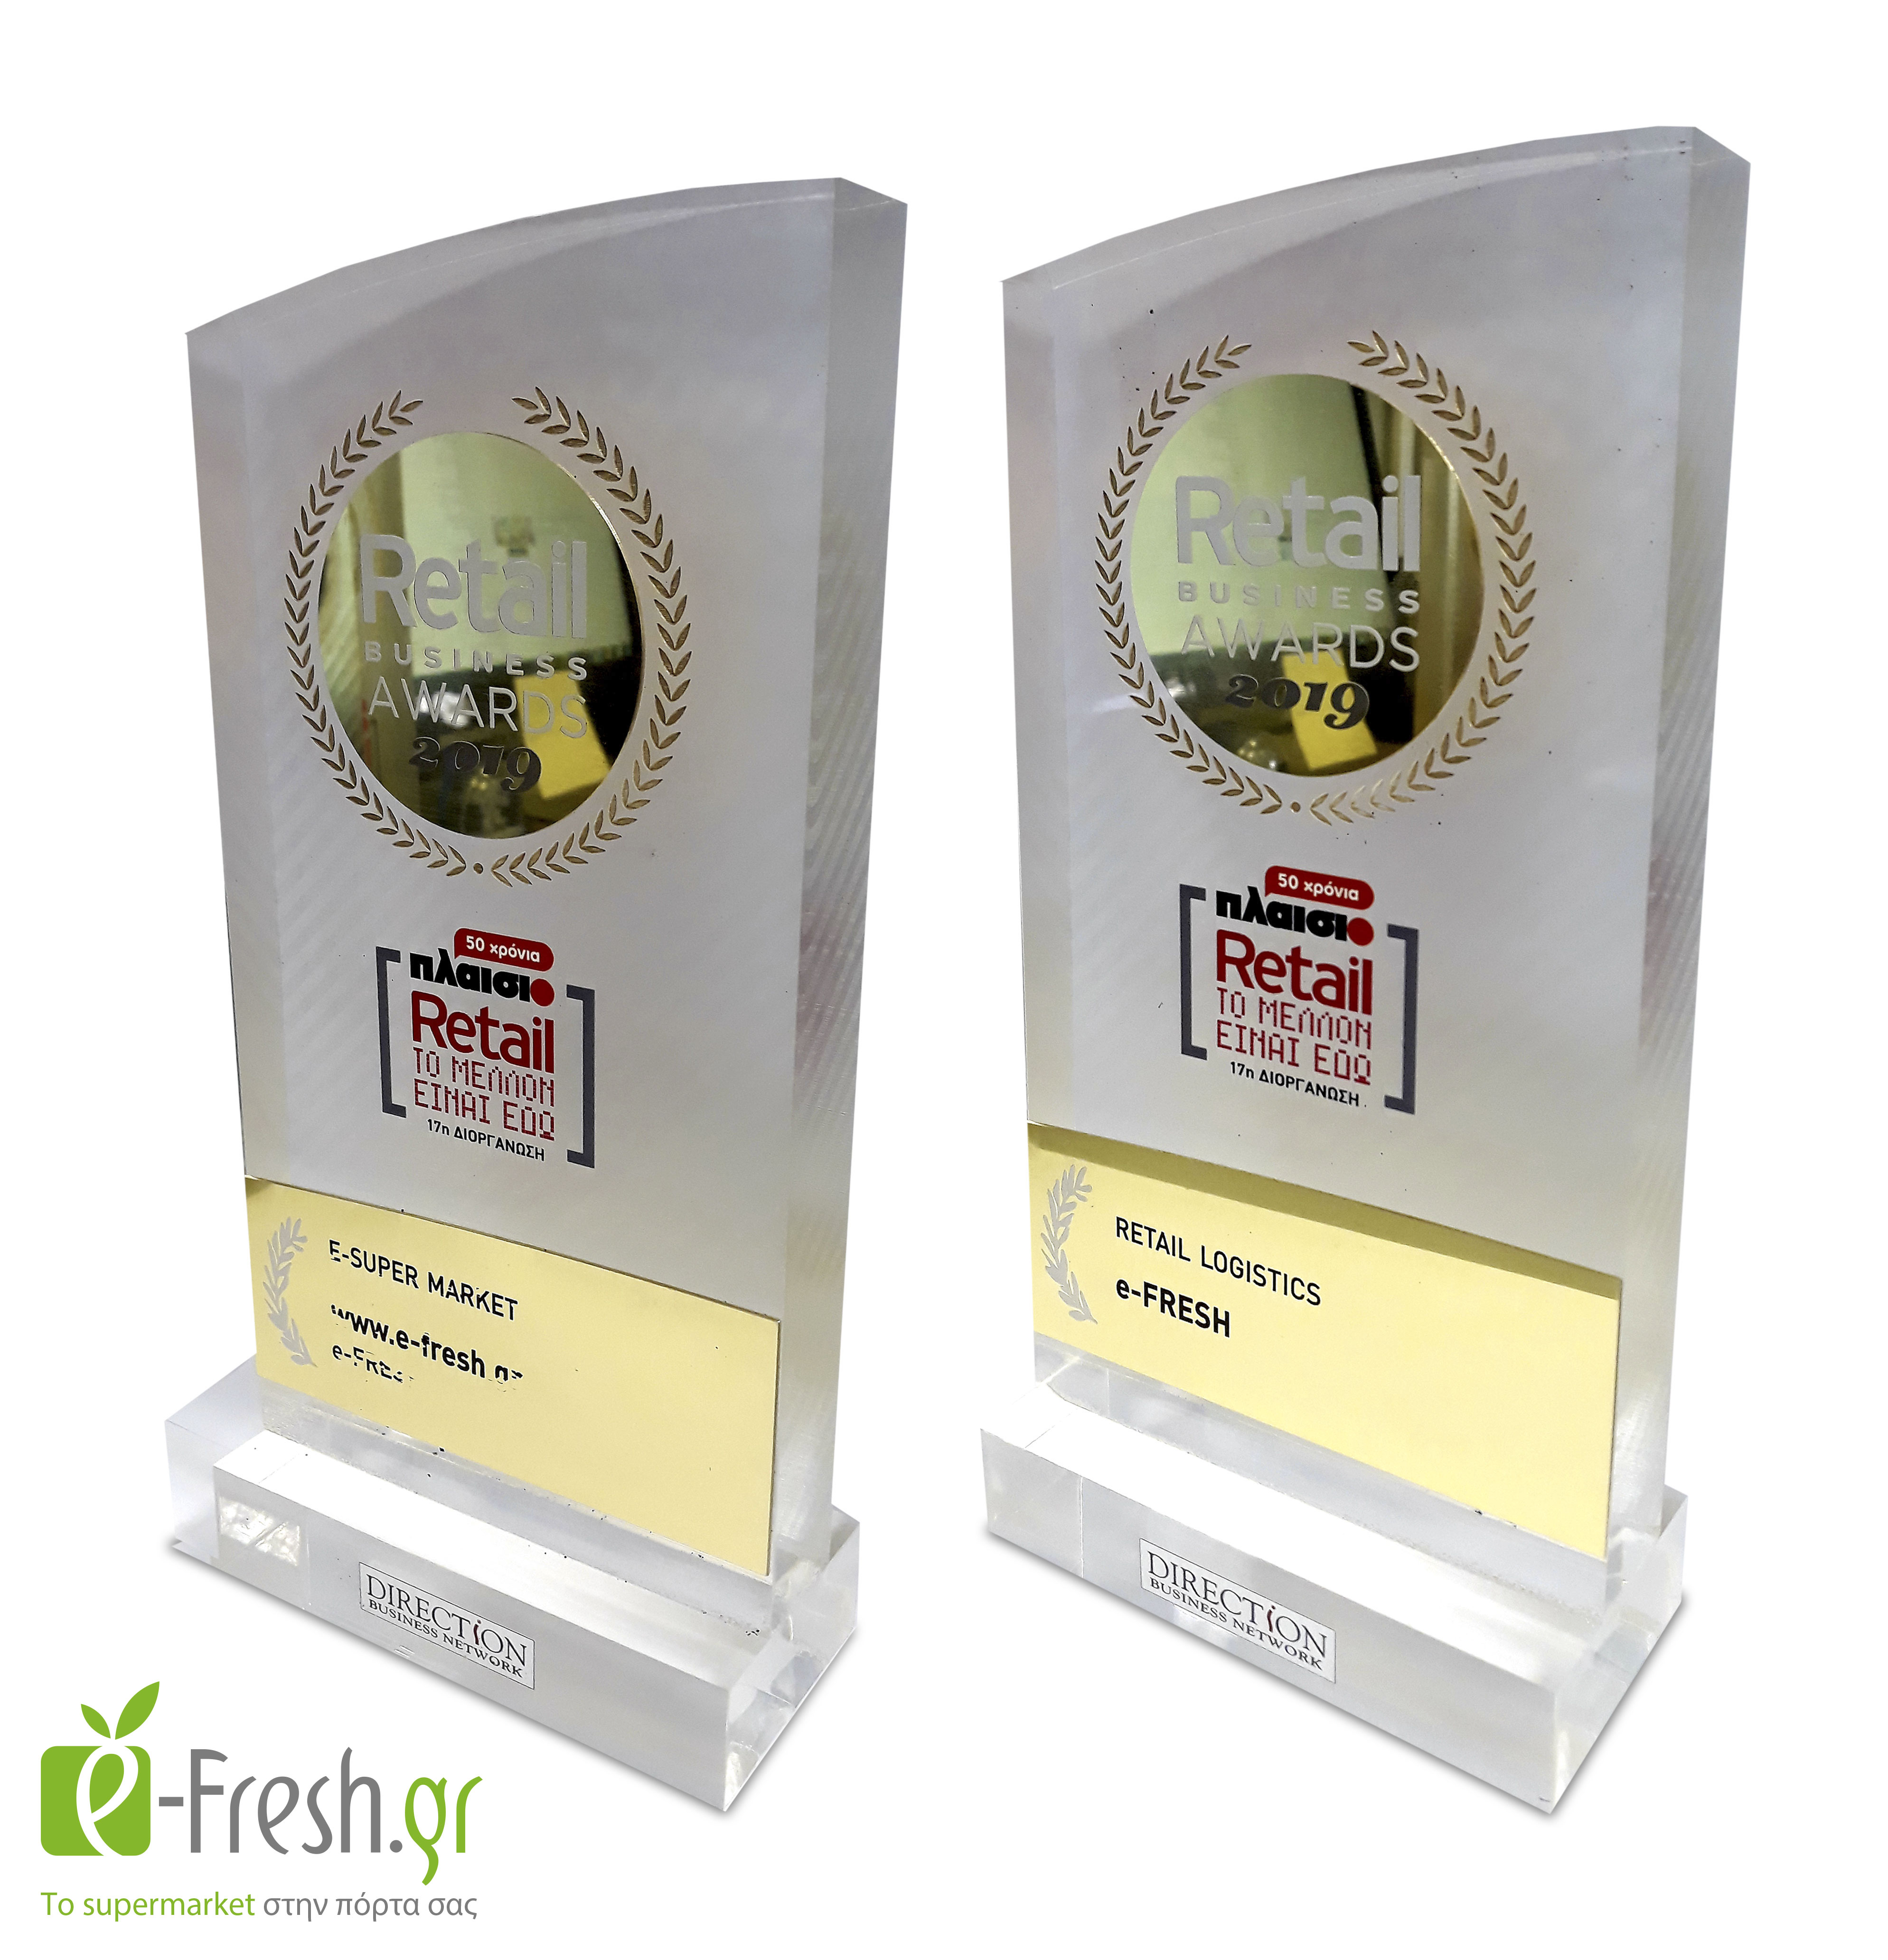 βραβεία για την e-fresh.gr σε Logistics & E-supermarket